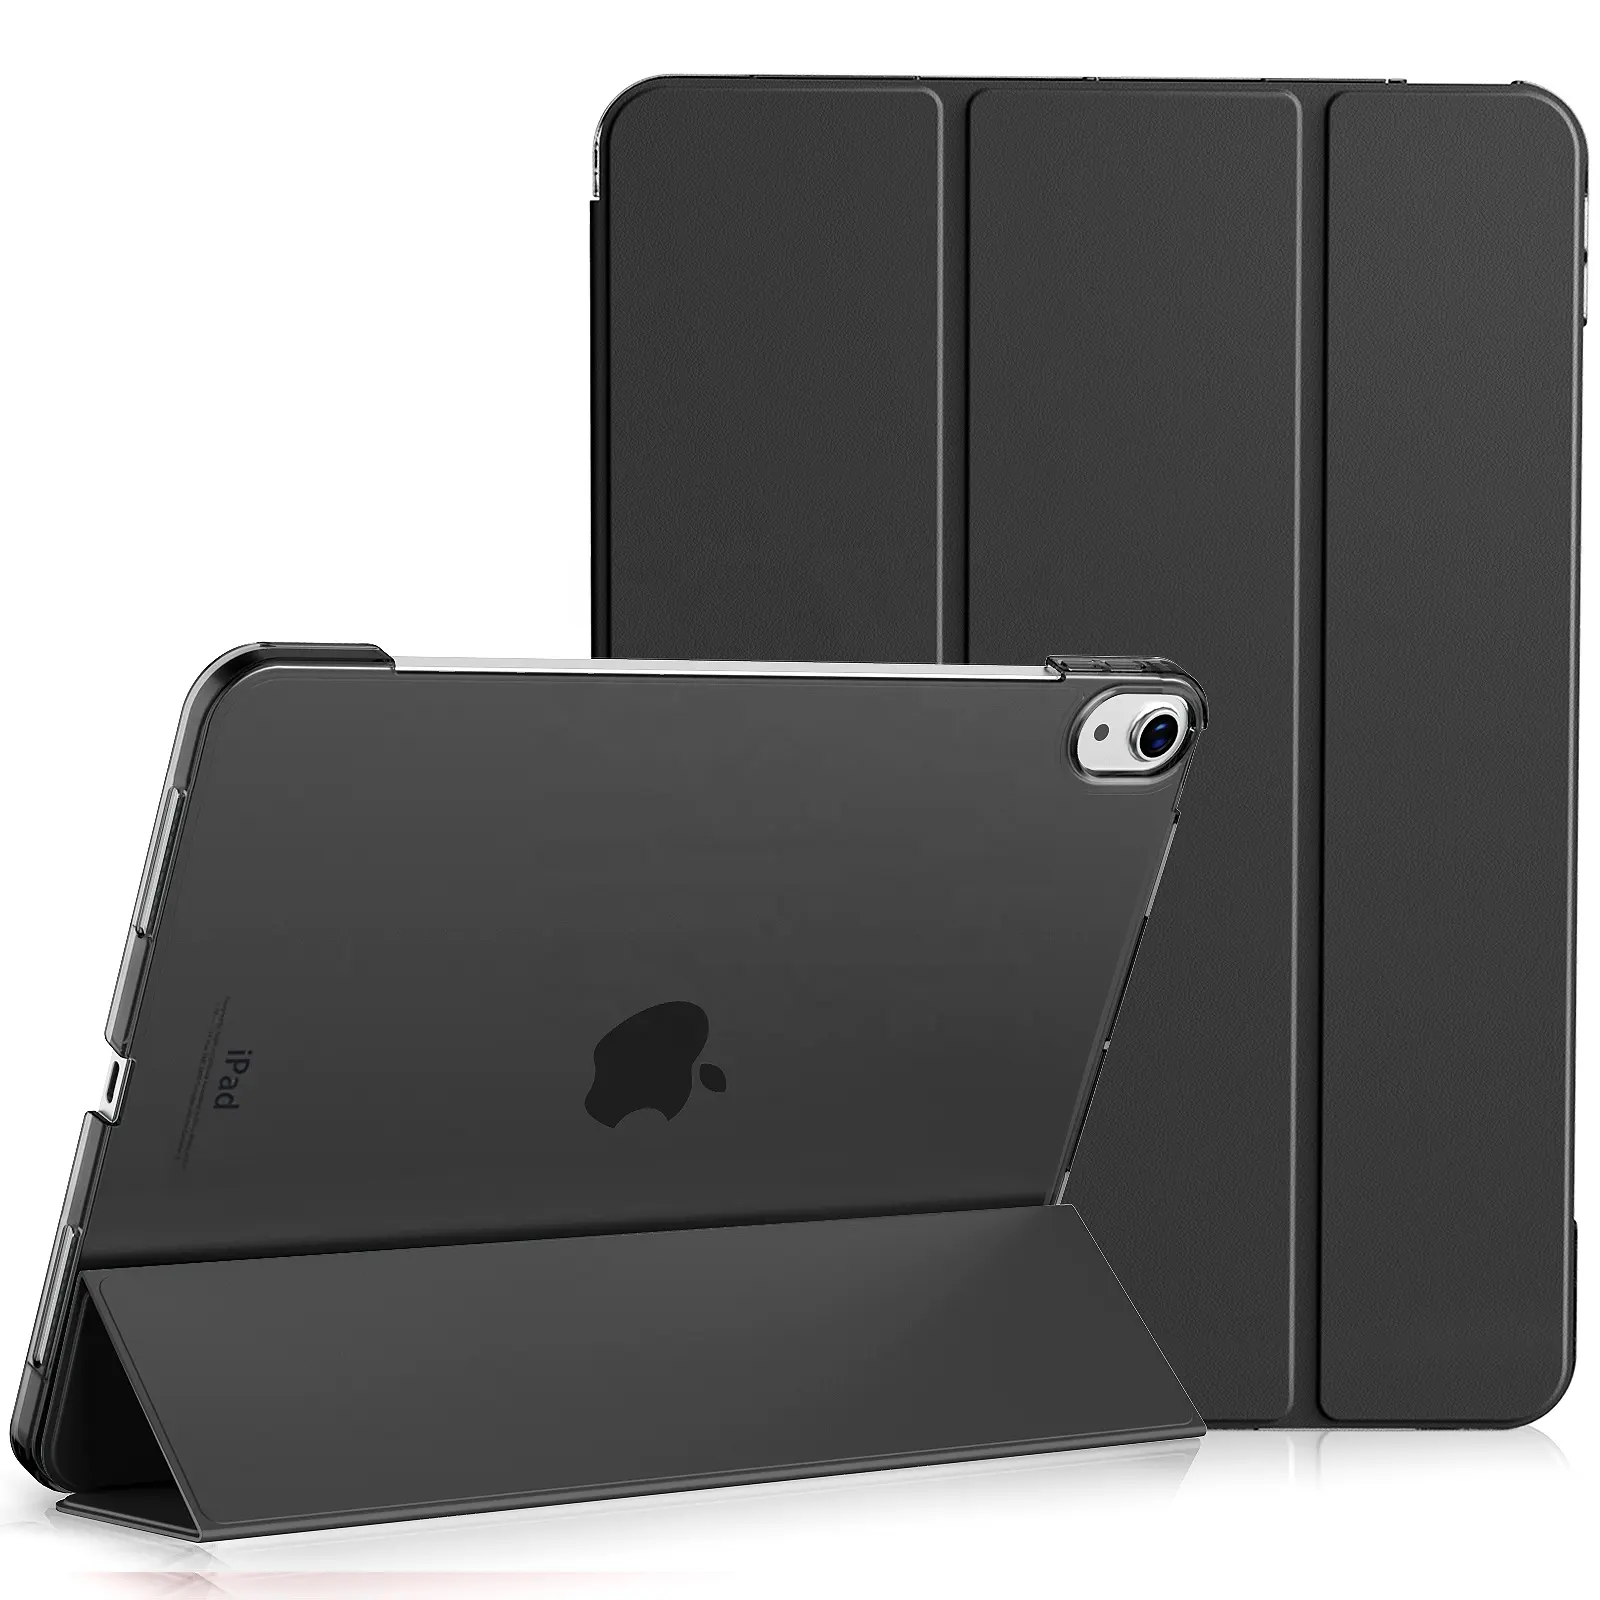 Custodia leggera con retro traslucido smerigliato Smart Cover per iPad Air 5th/4th generazione 10.9 pollici